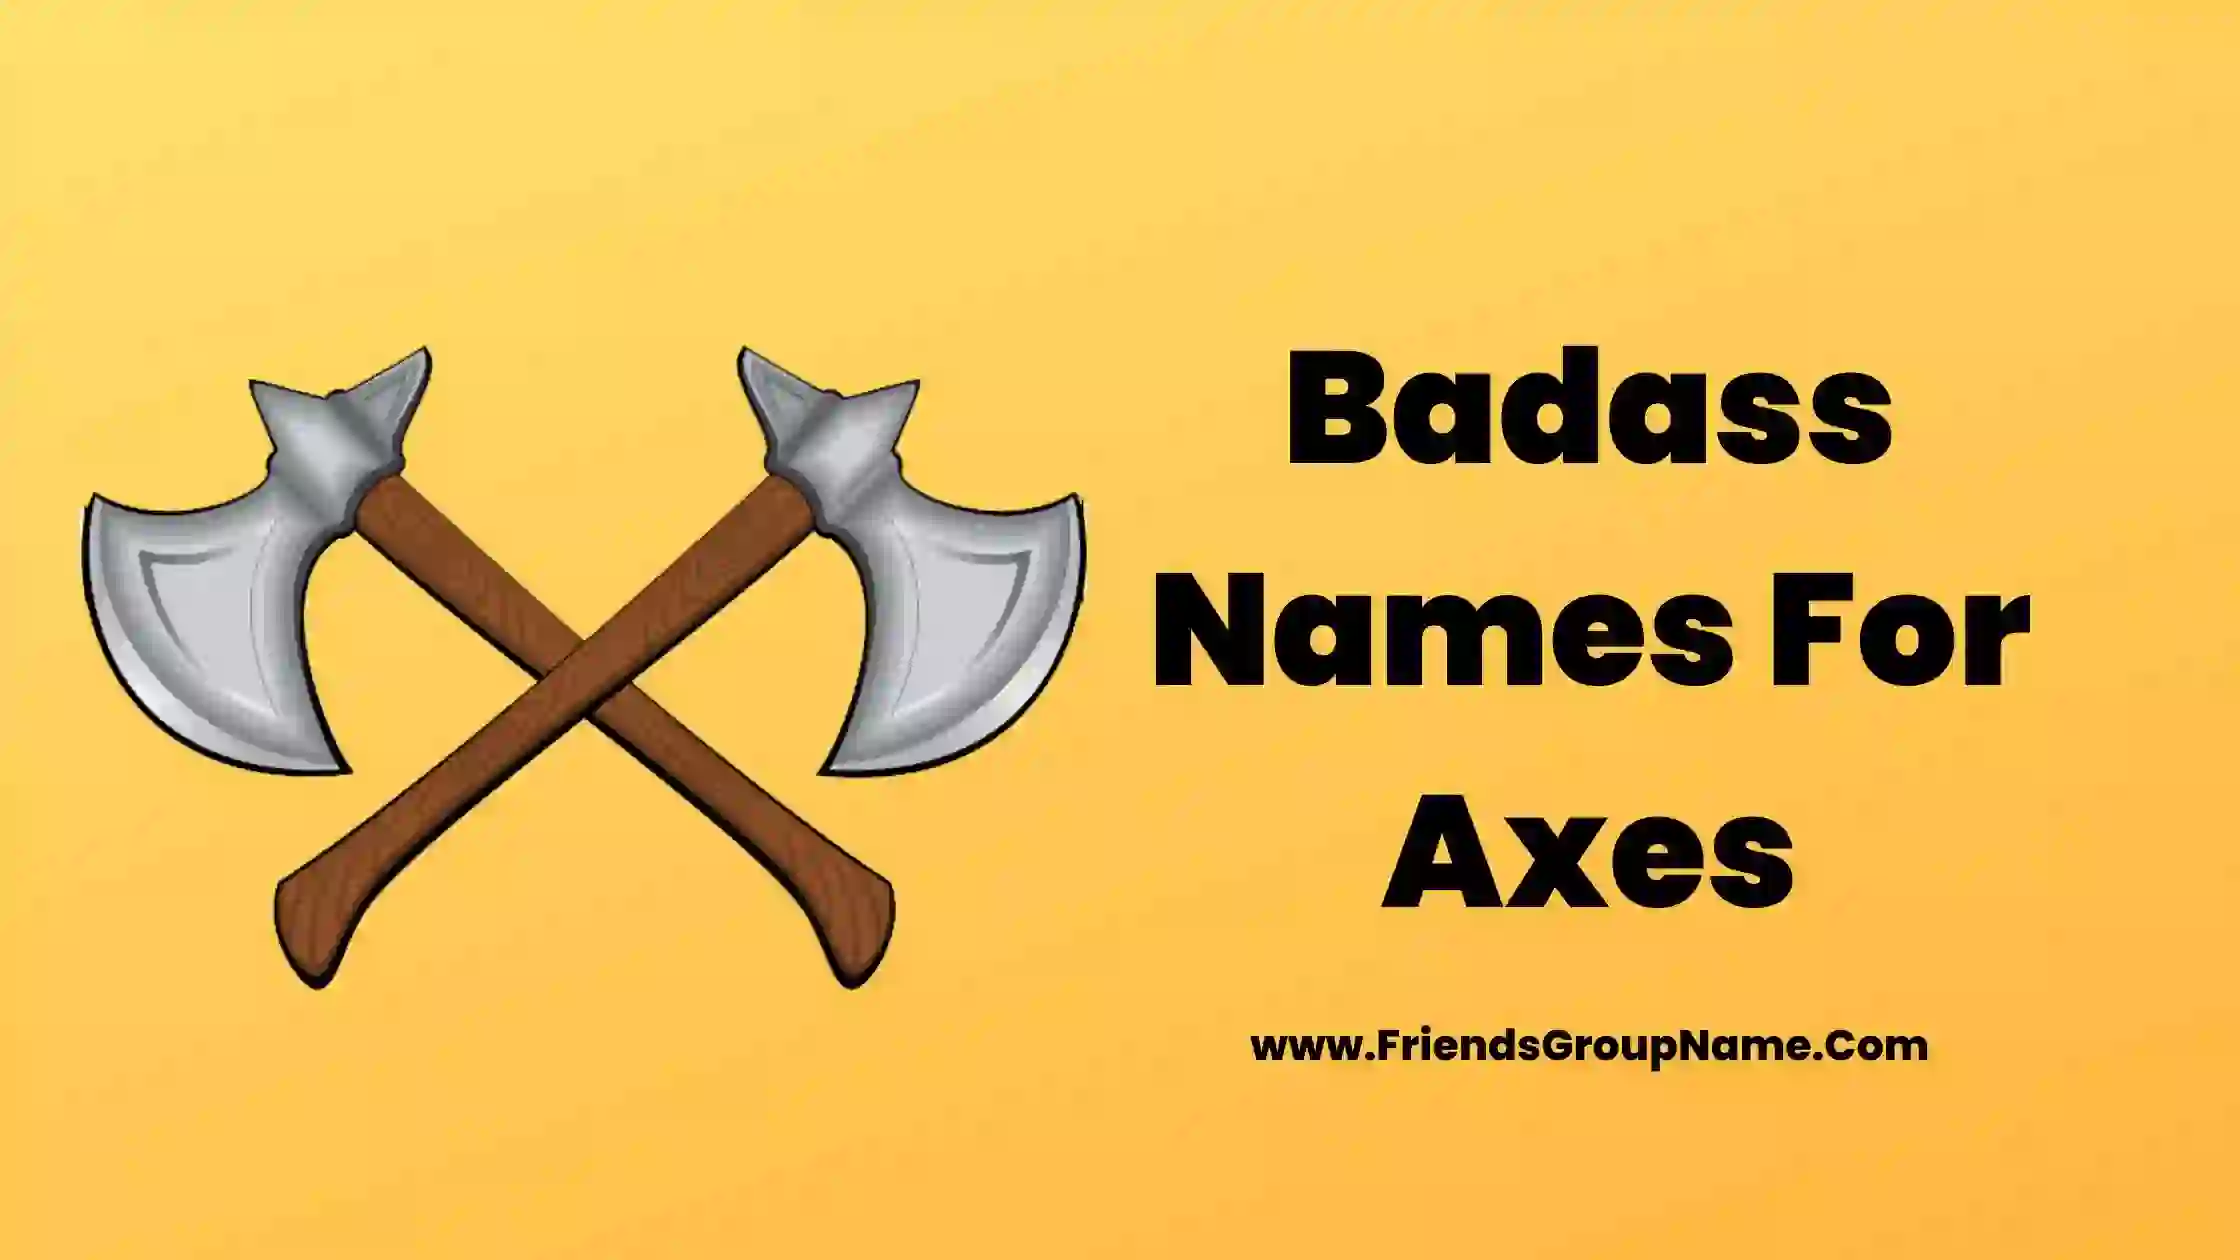 Badass Names For Axes